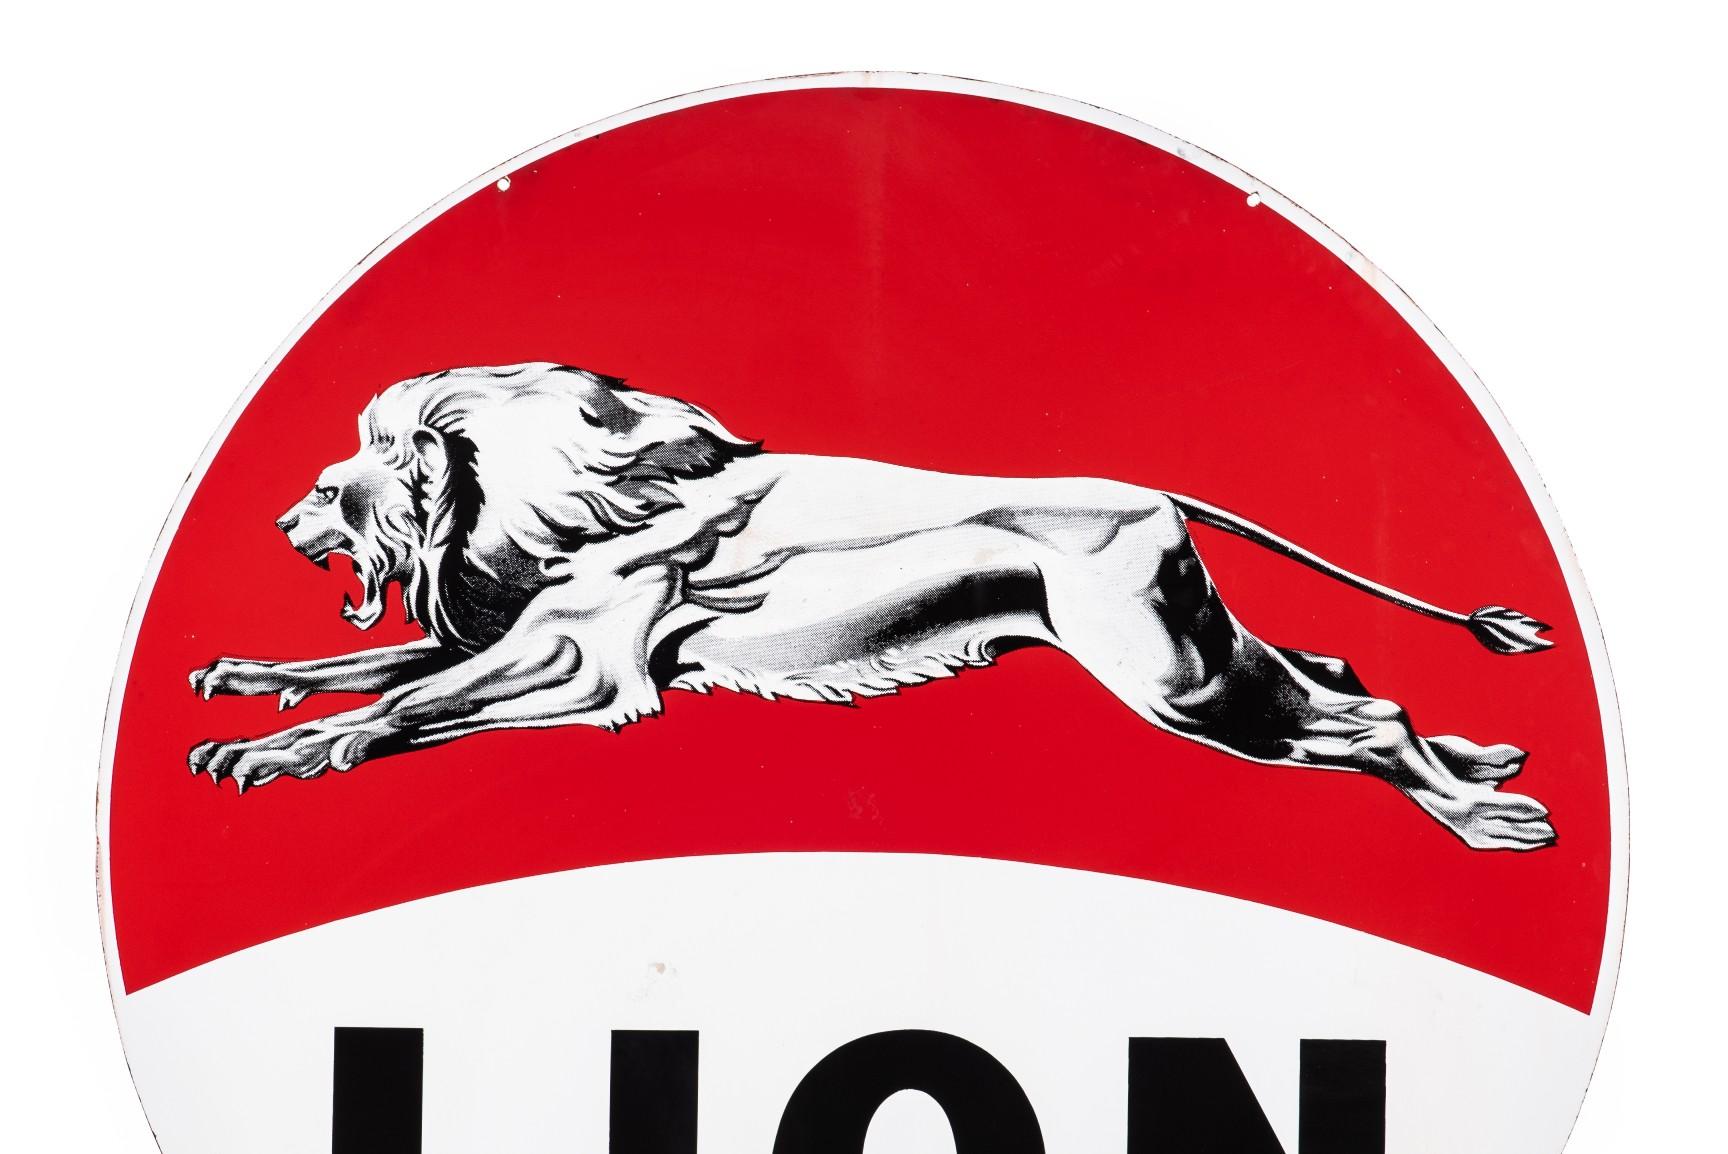 Lion Gasoline Porcelain Sign